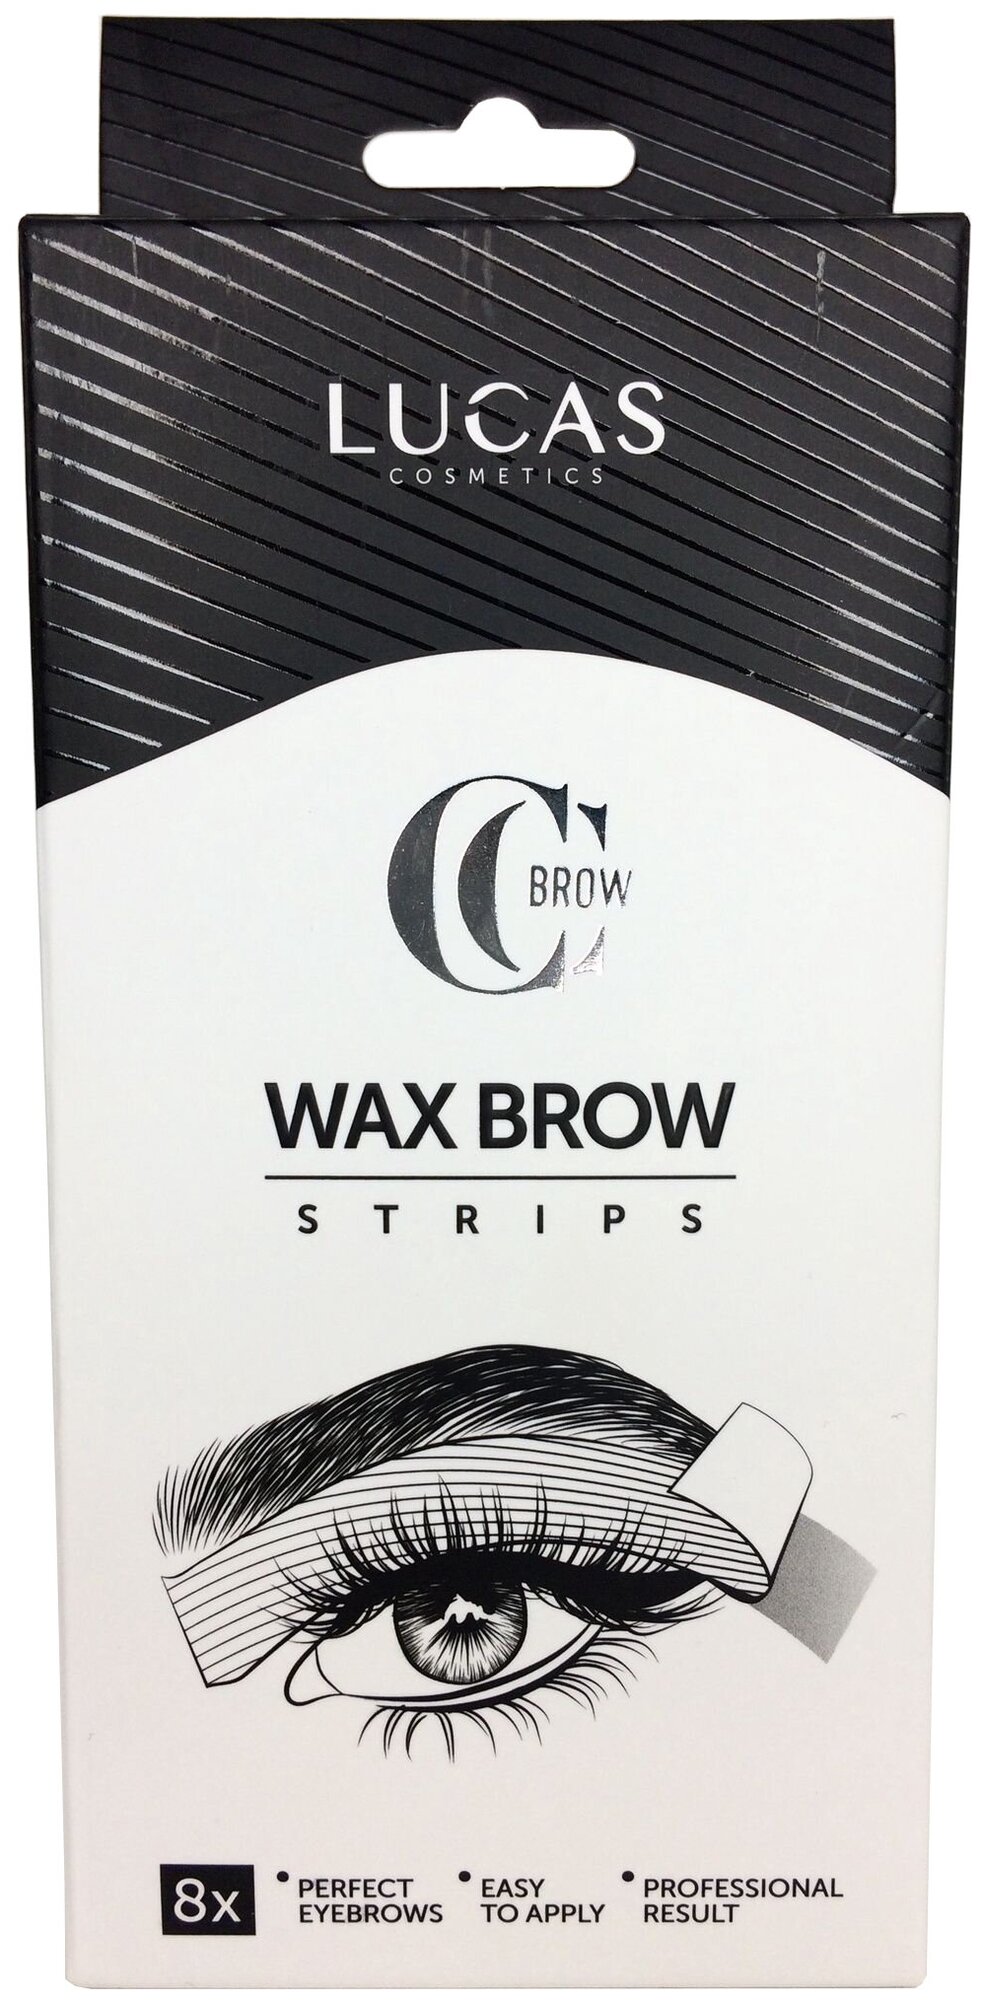 Набор восковых полосок для коррекции бровей / CC Brow Wax Brow Strips 8 шт